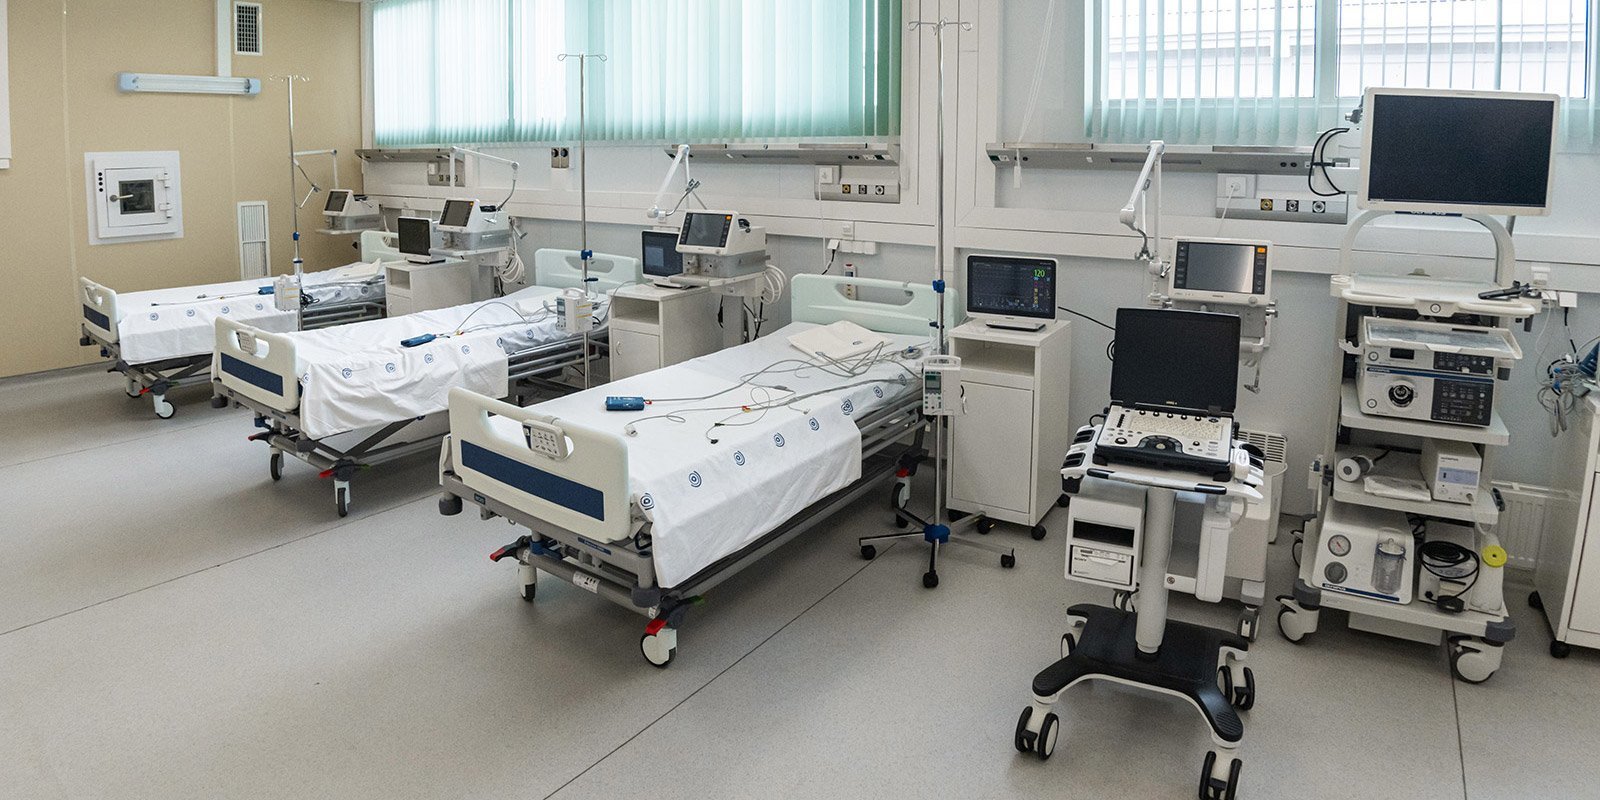 俄版“火神山”医院开始接收病患 首批患者已入住